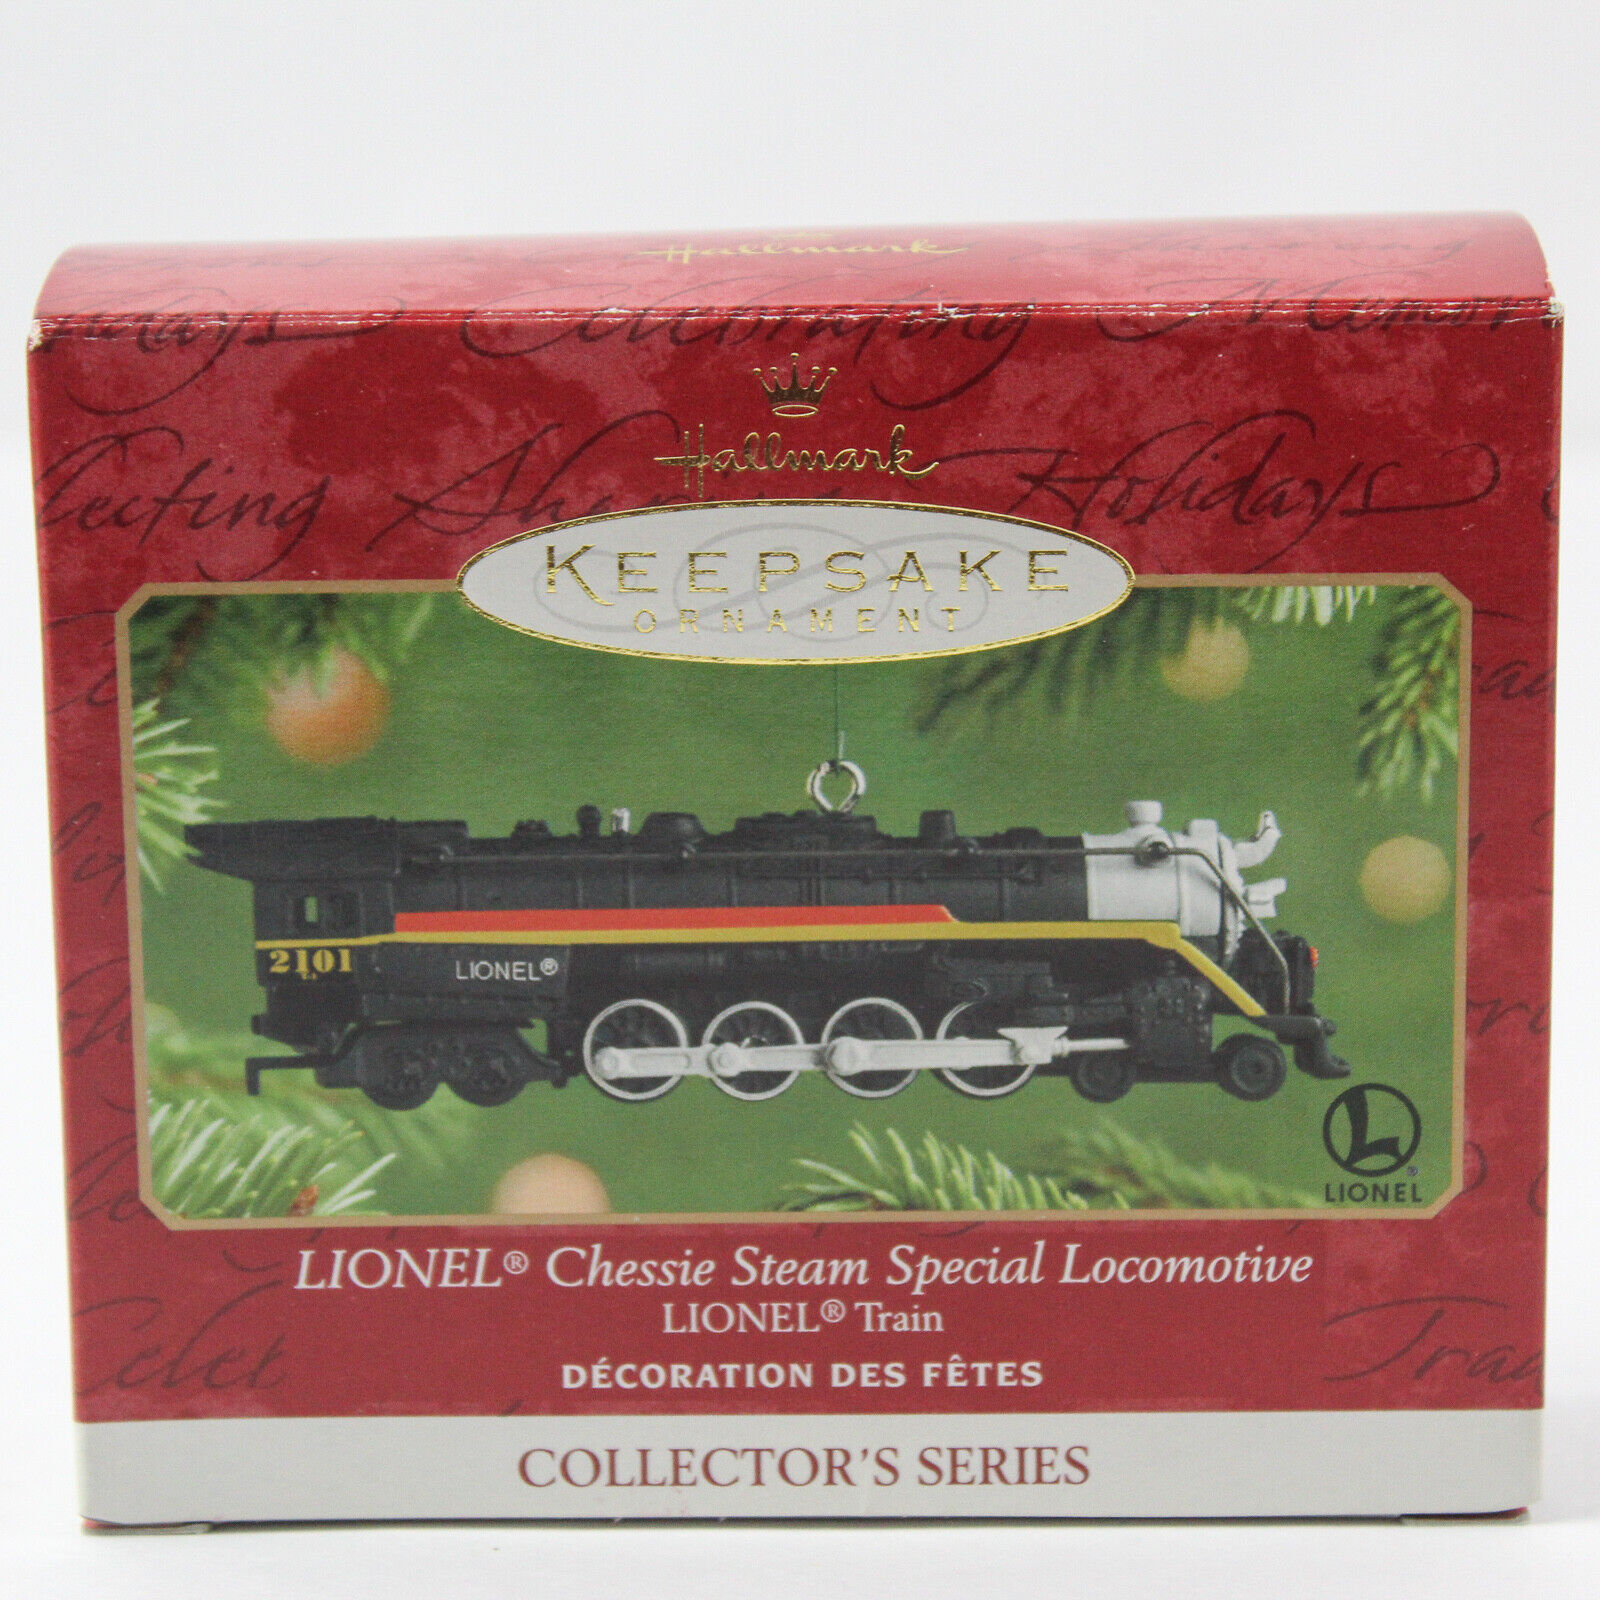 Hallmark Keepsake Ornament Lionel Trains Chessie Steam Special Locomotive #6